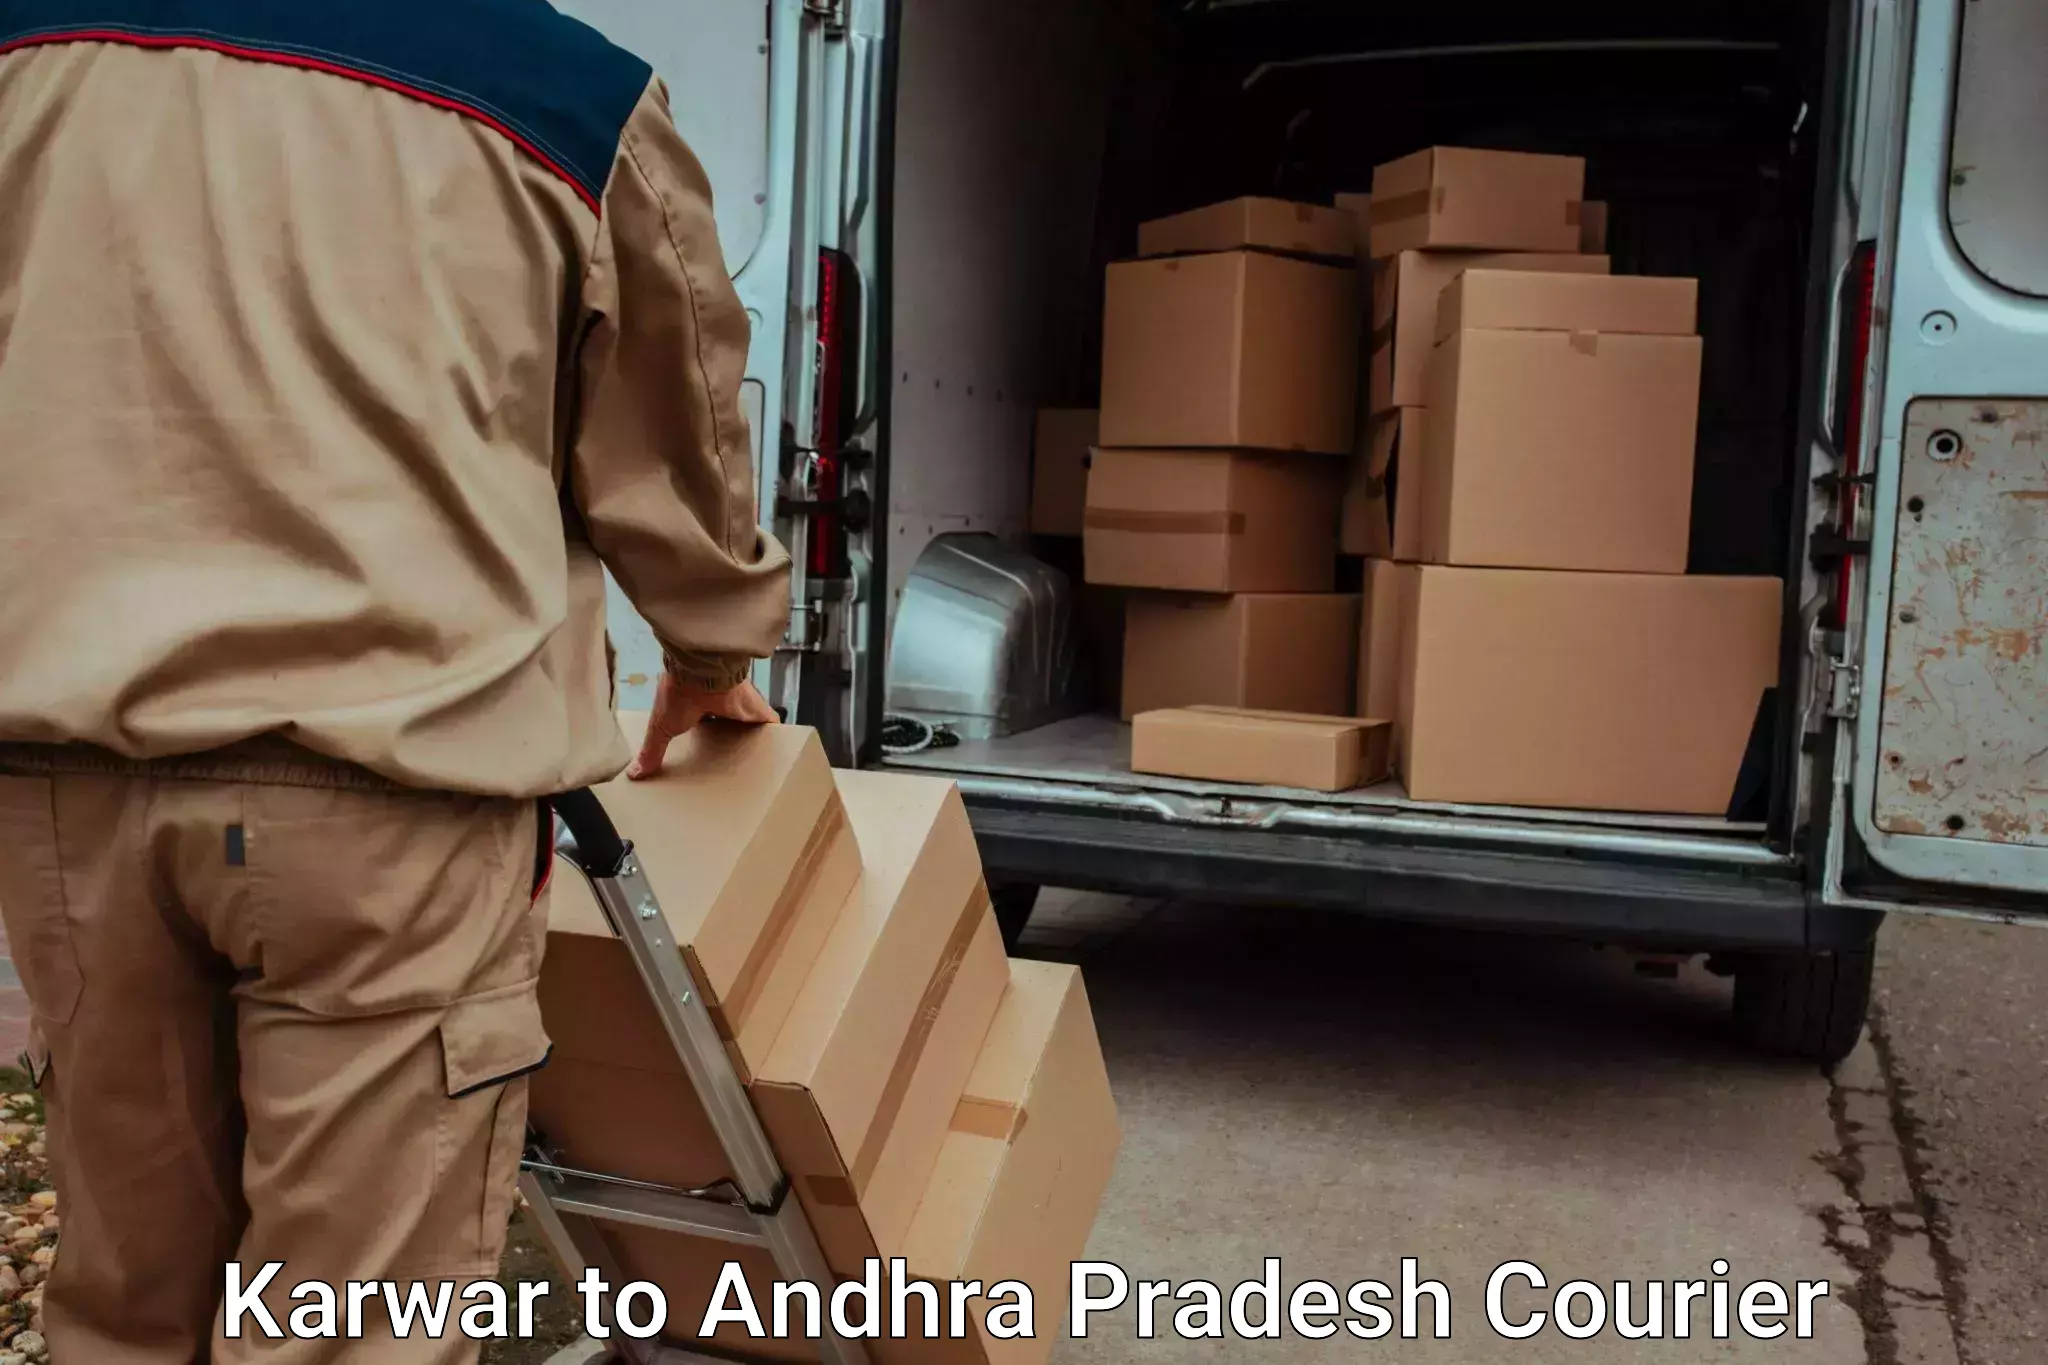 Luggage transport service Karwar to Palasa